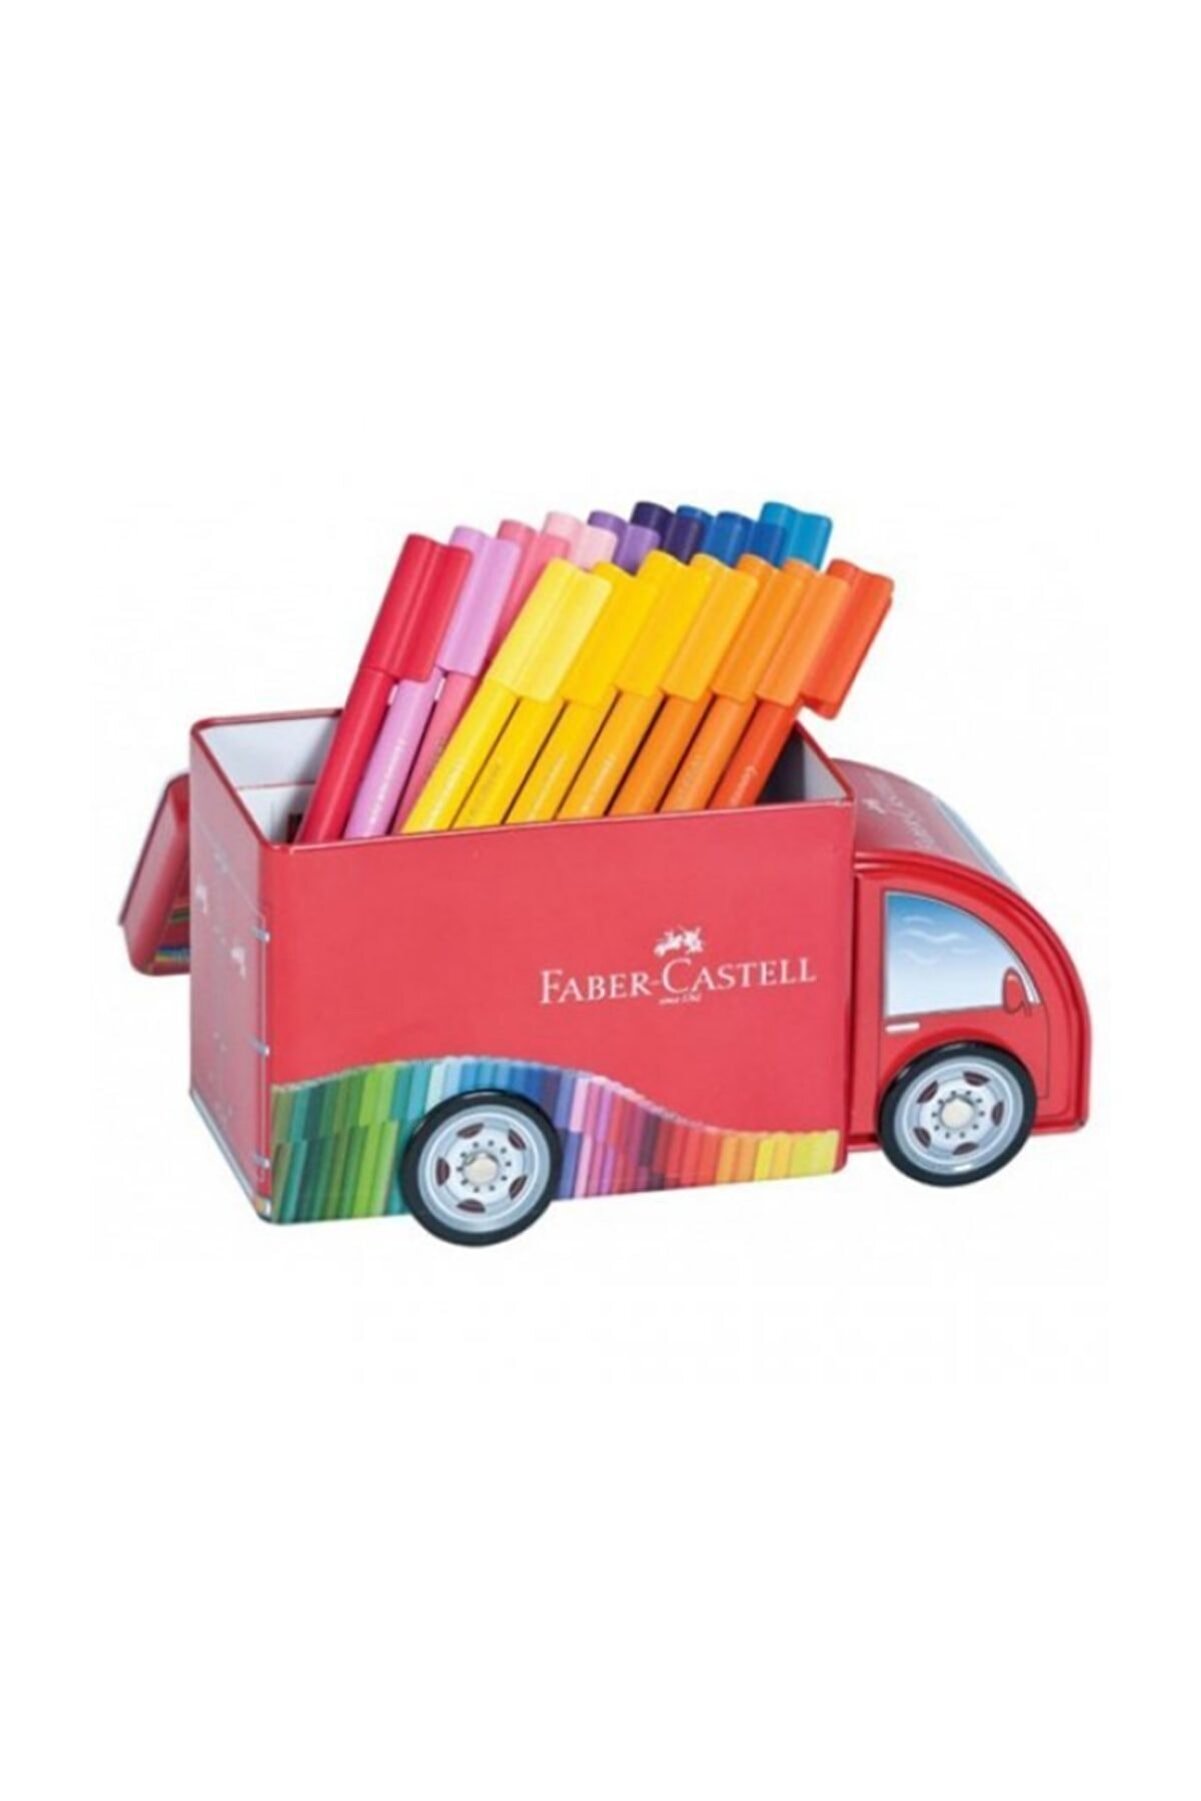 Faber Castell 33 Renk Eğlenceli Keçeli Kalem Seti - Kamyon Tasarım